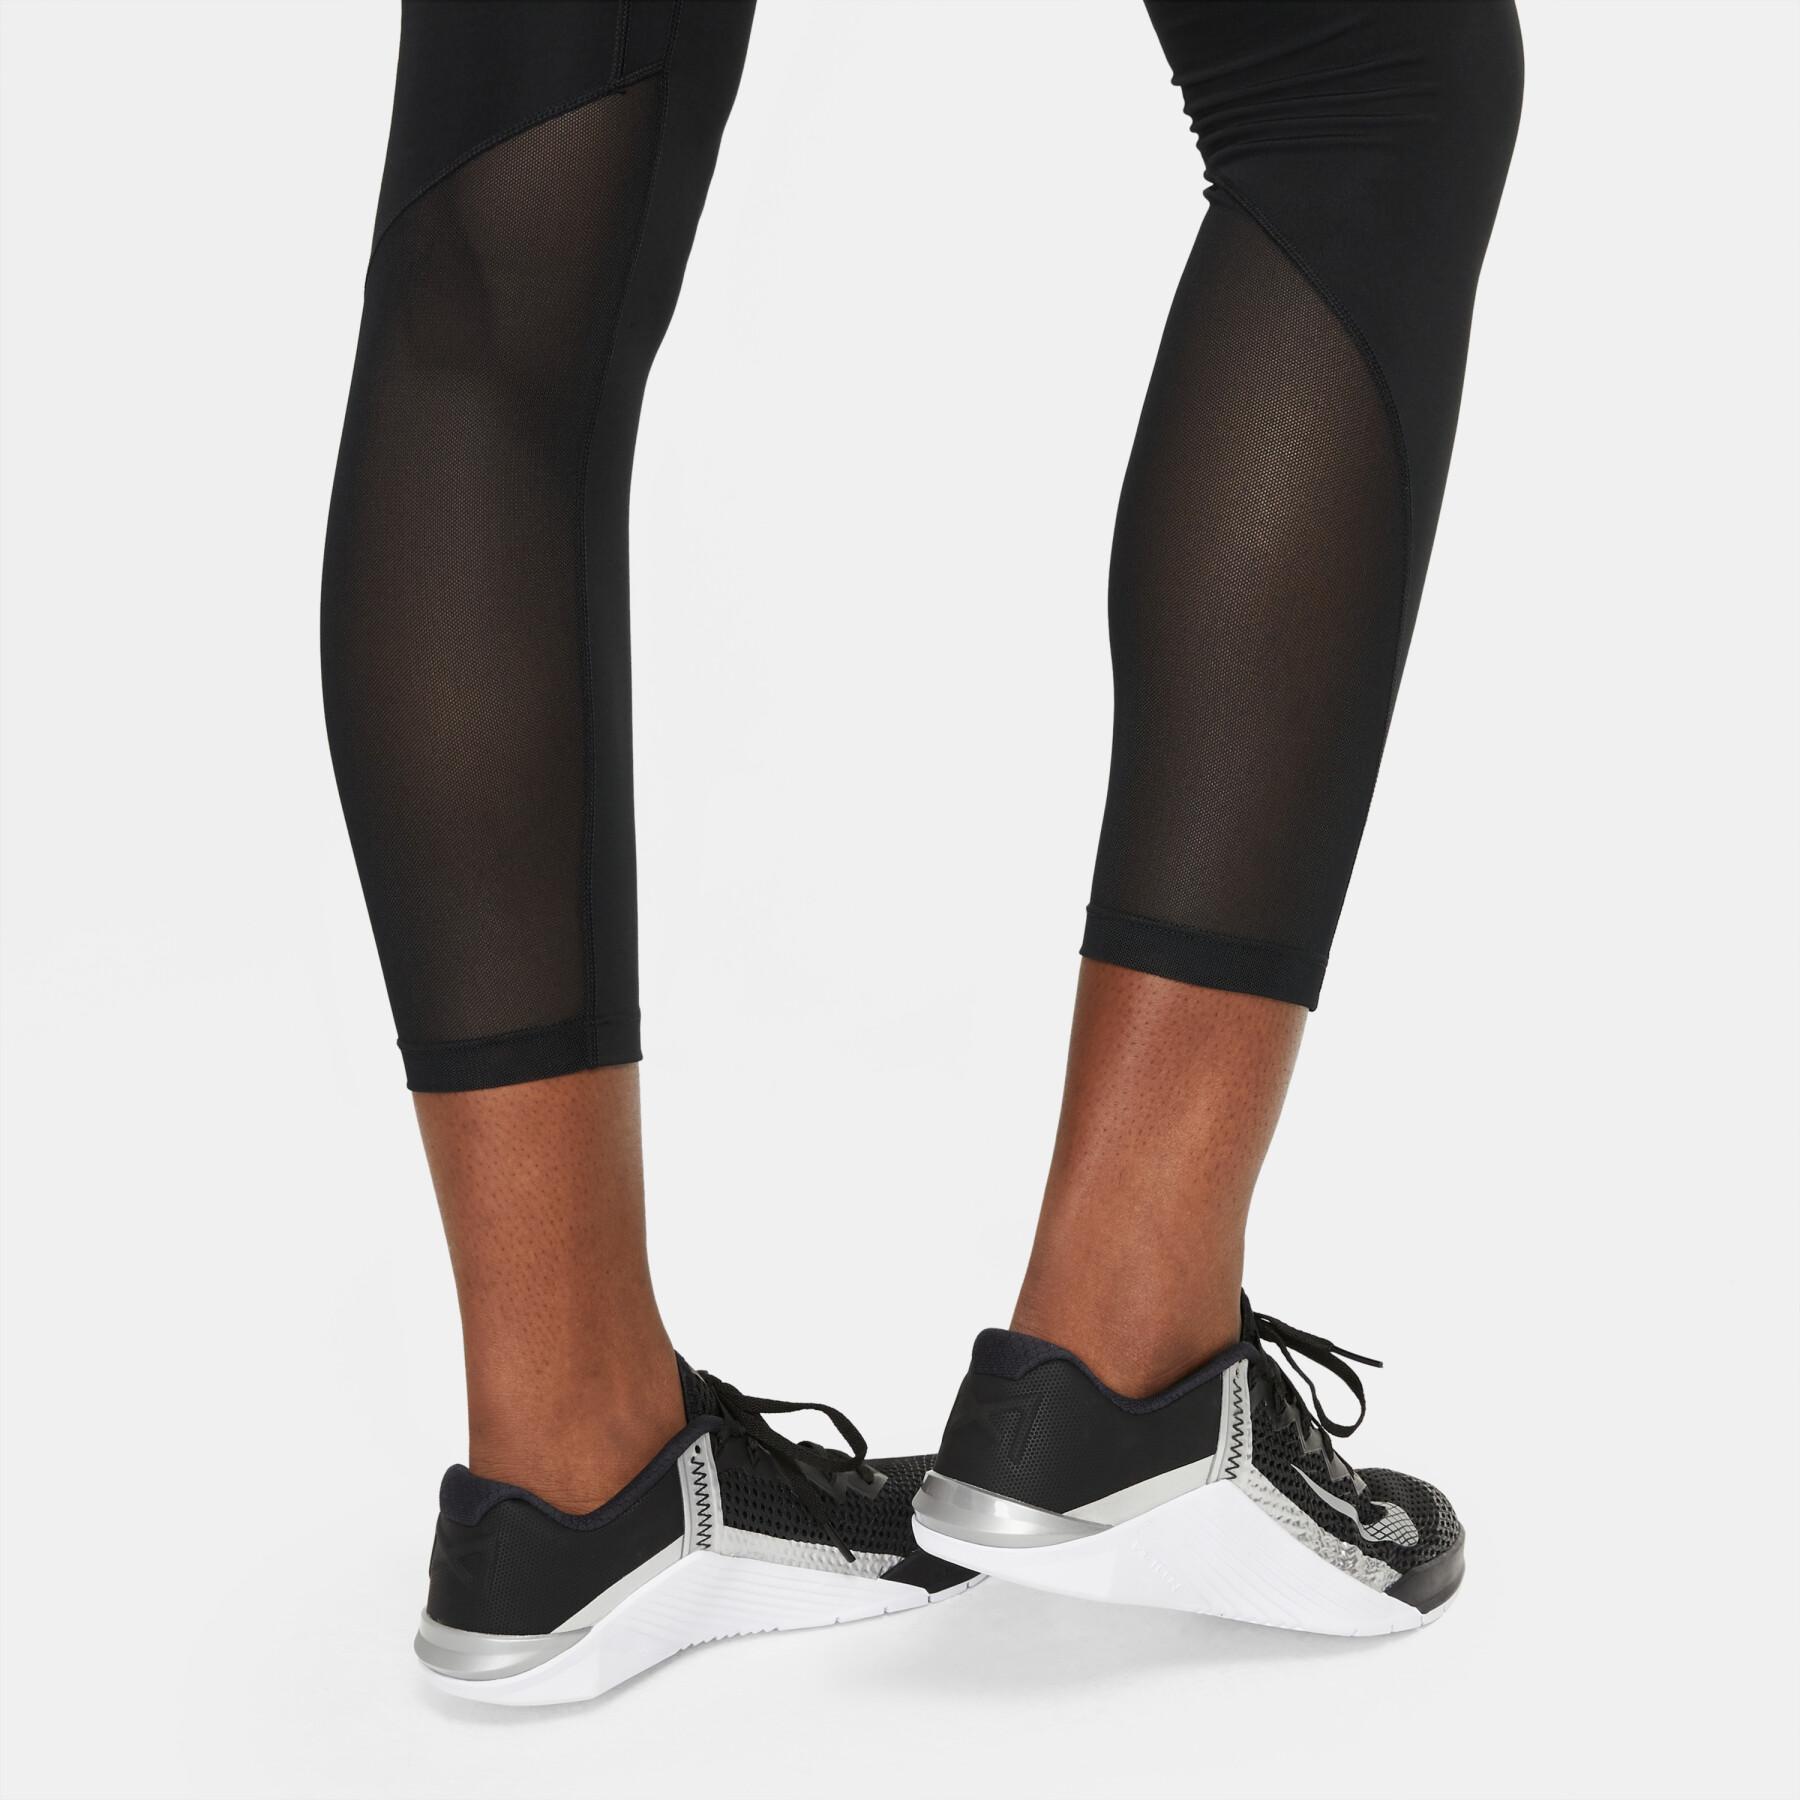 Legging 7/8 femme Nike One Mid-Rise